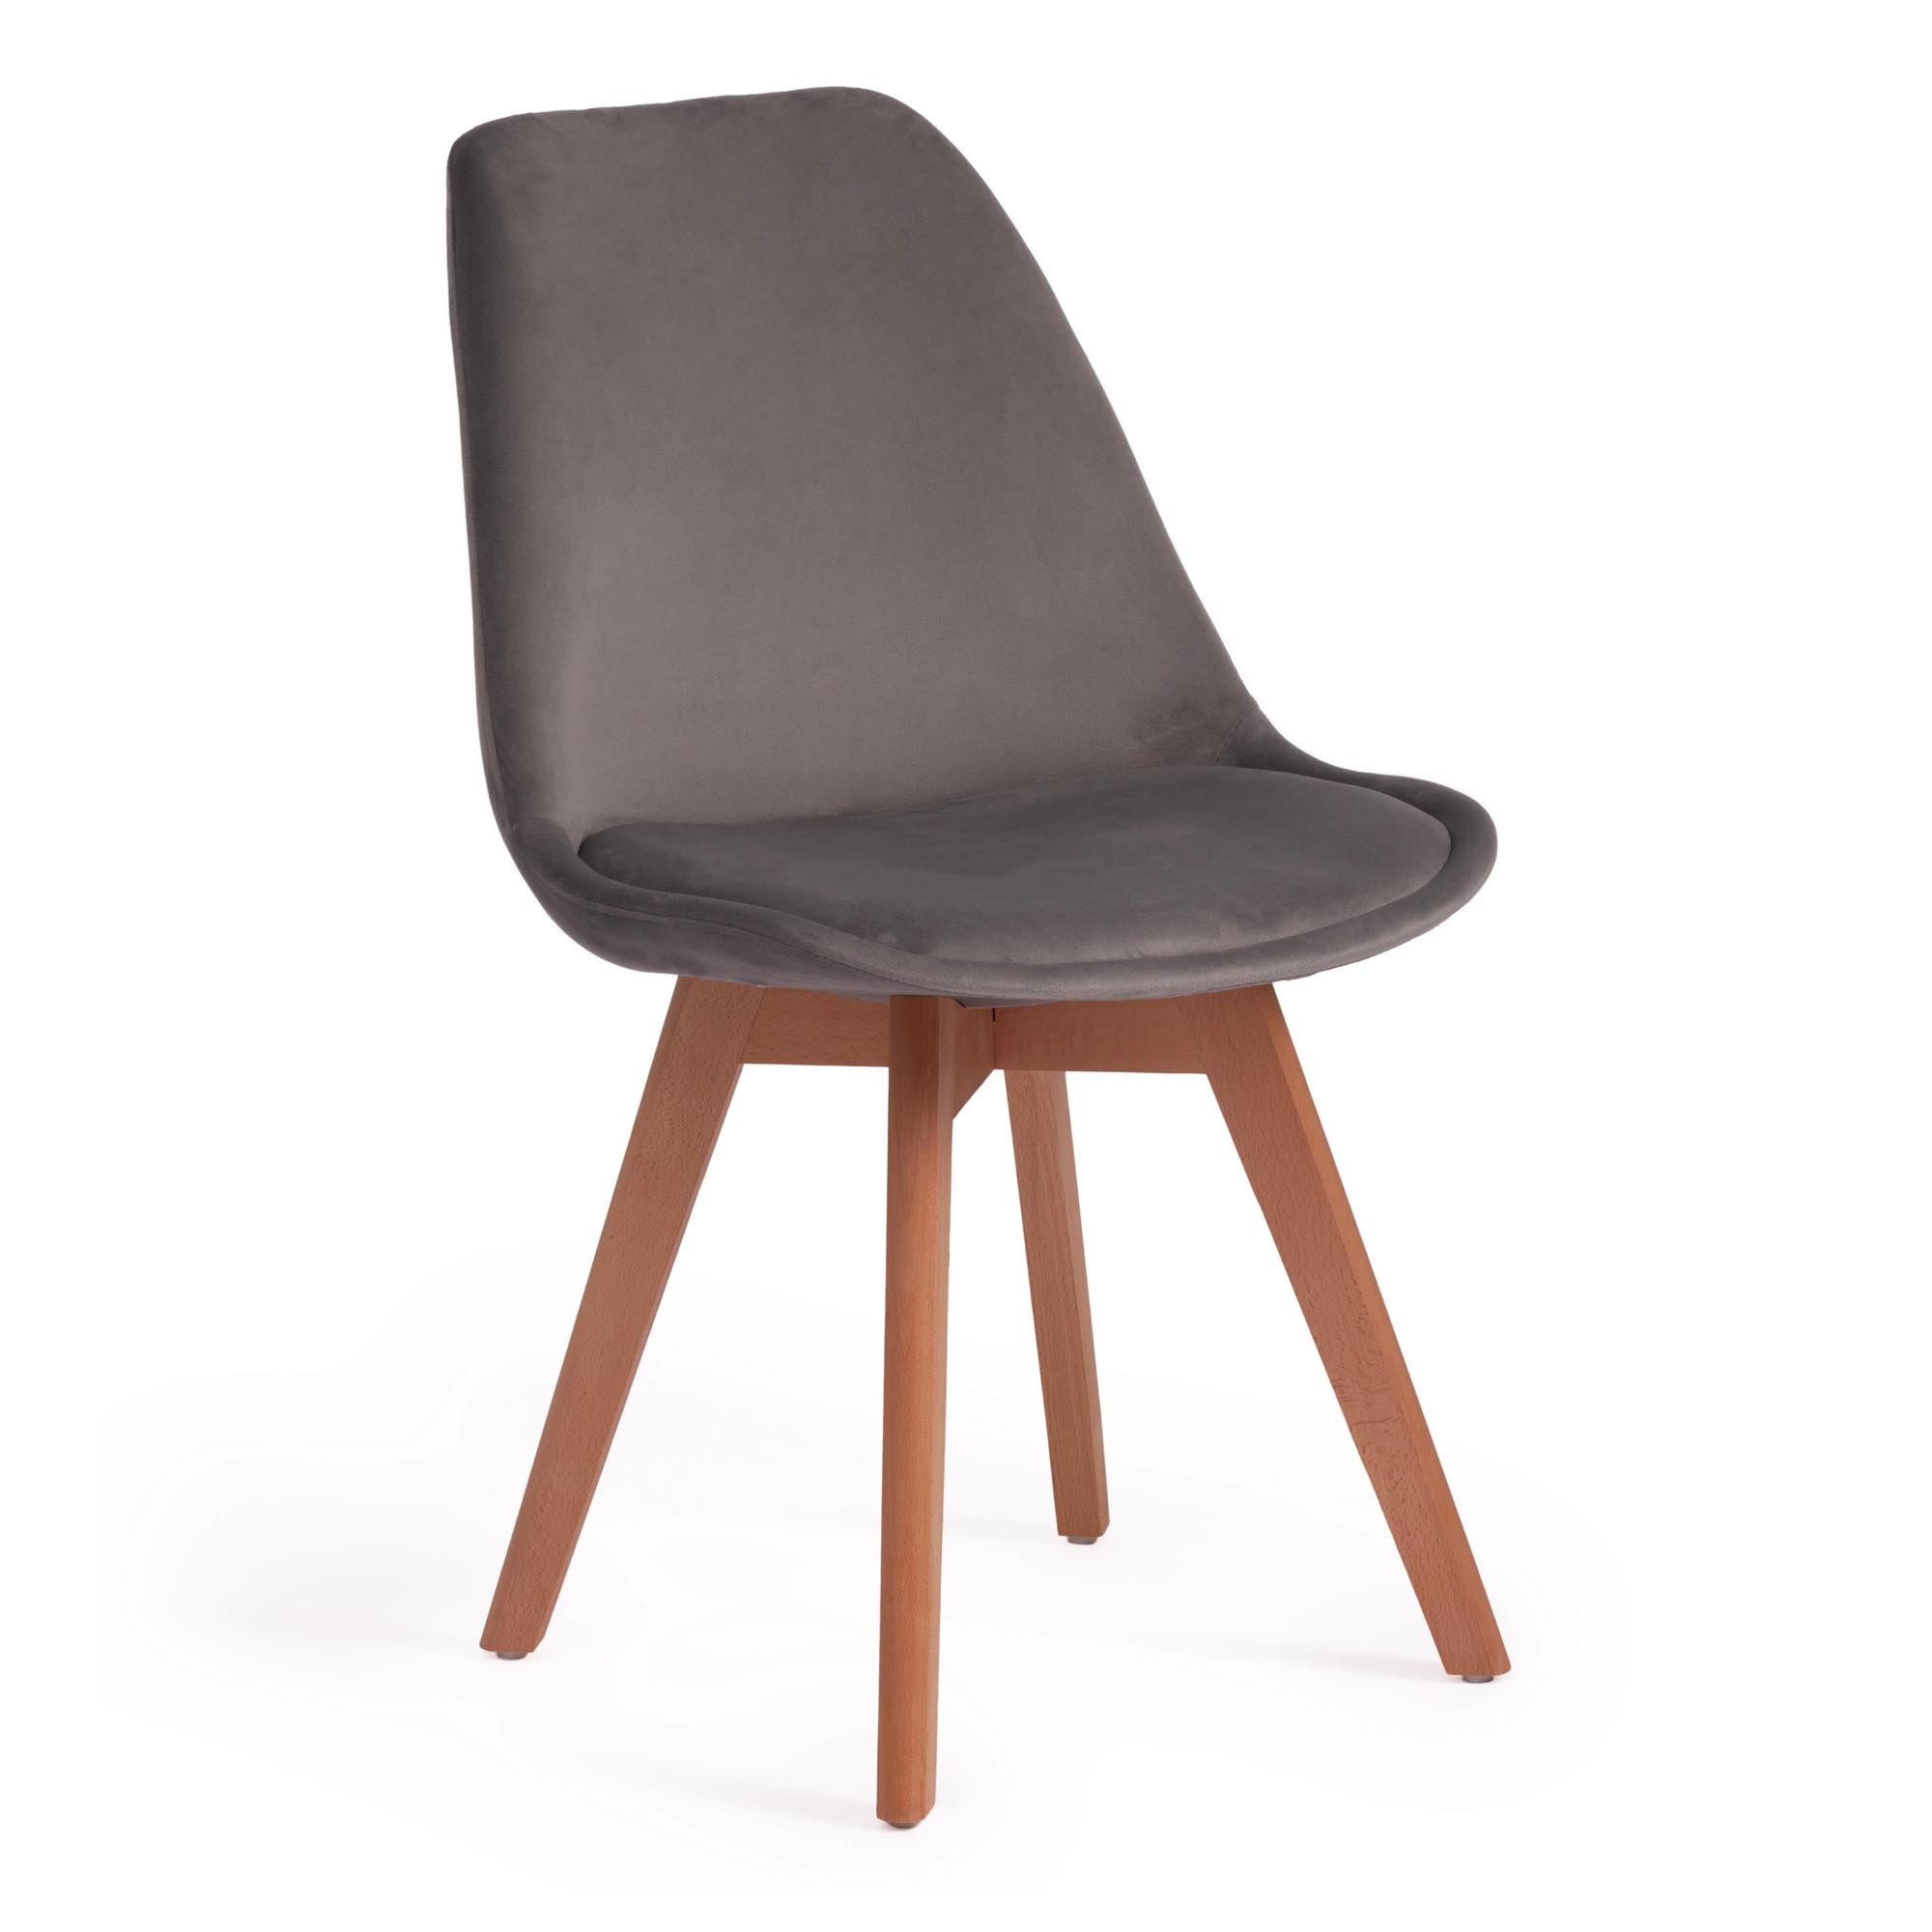 Стул TC Tulip Soft 54x47x83 см светло-серый/натуральный роскошный стул nordic светильник для макияжа домашний круглый стул для спальни туалетный стул сетчатый красный стул для макияжа милый табур